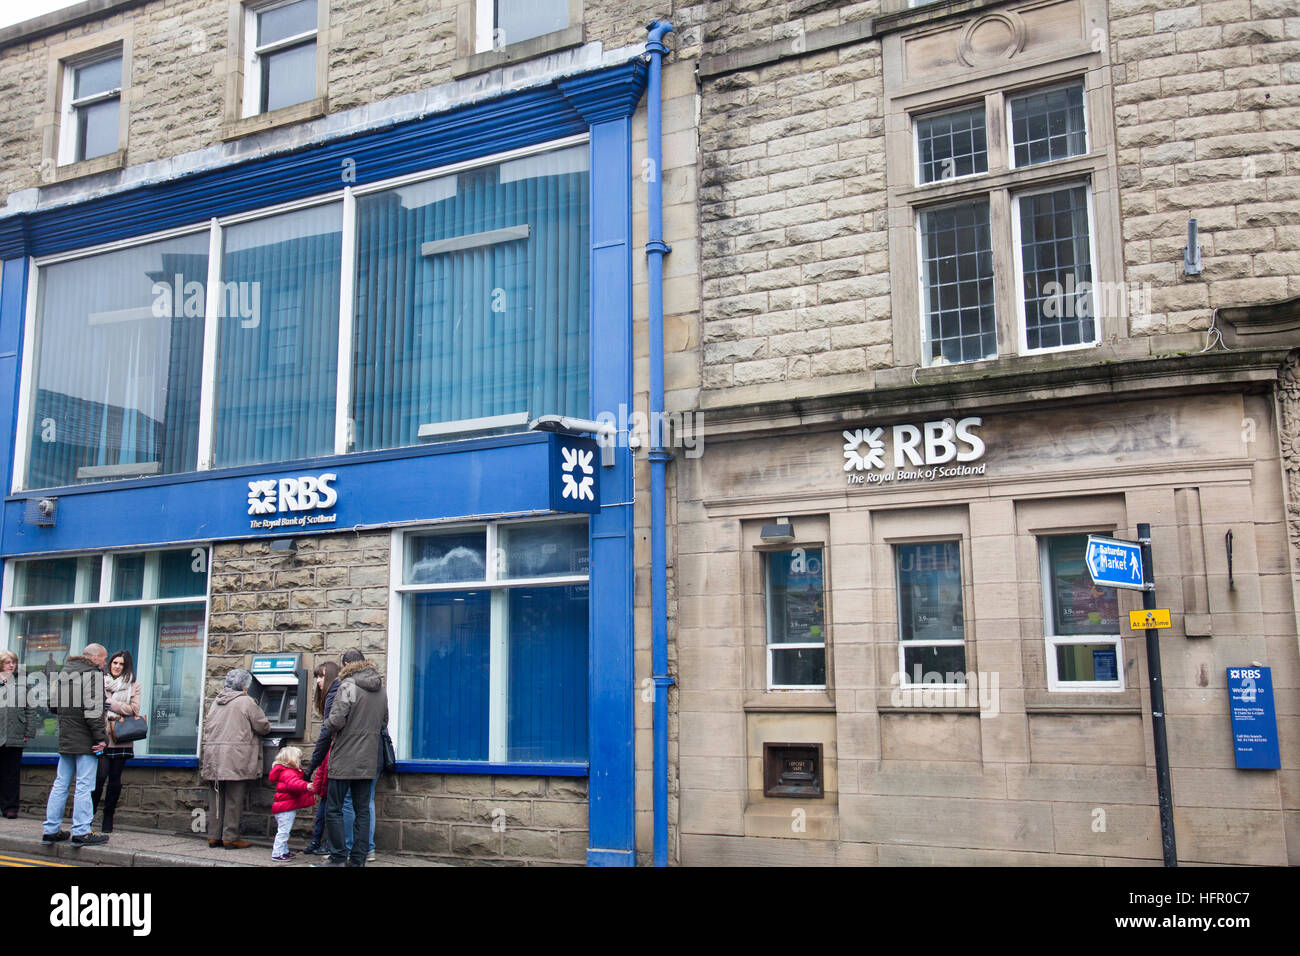 Succursale de Royal Bank of Scotland (RBS) dans Ramsbottom, Lancashire, Angleterre Banque D'Images